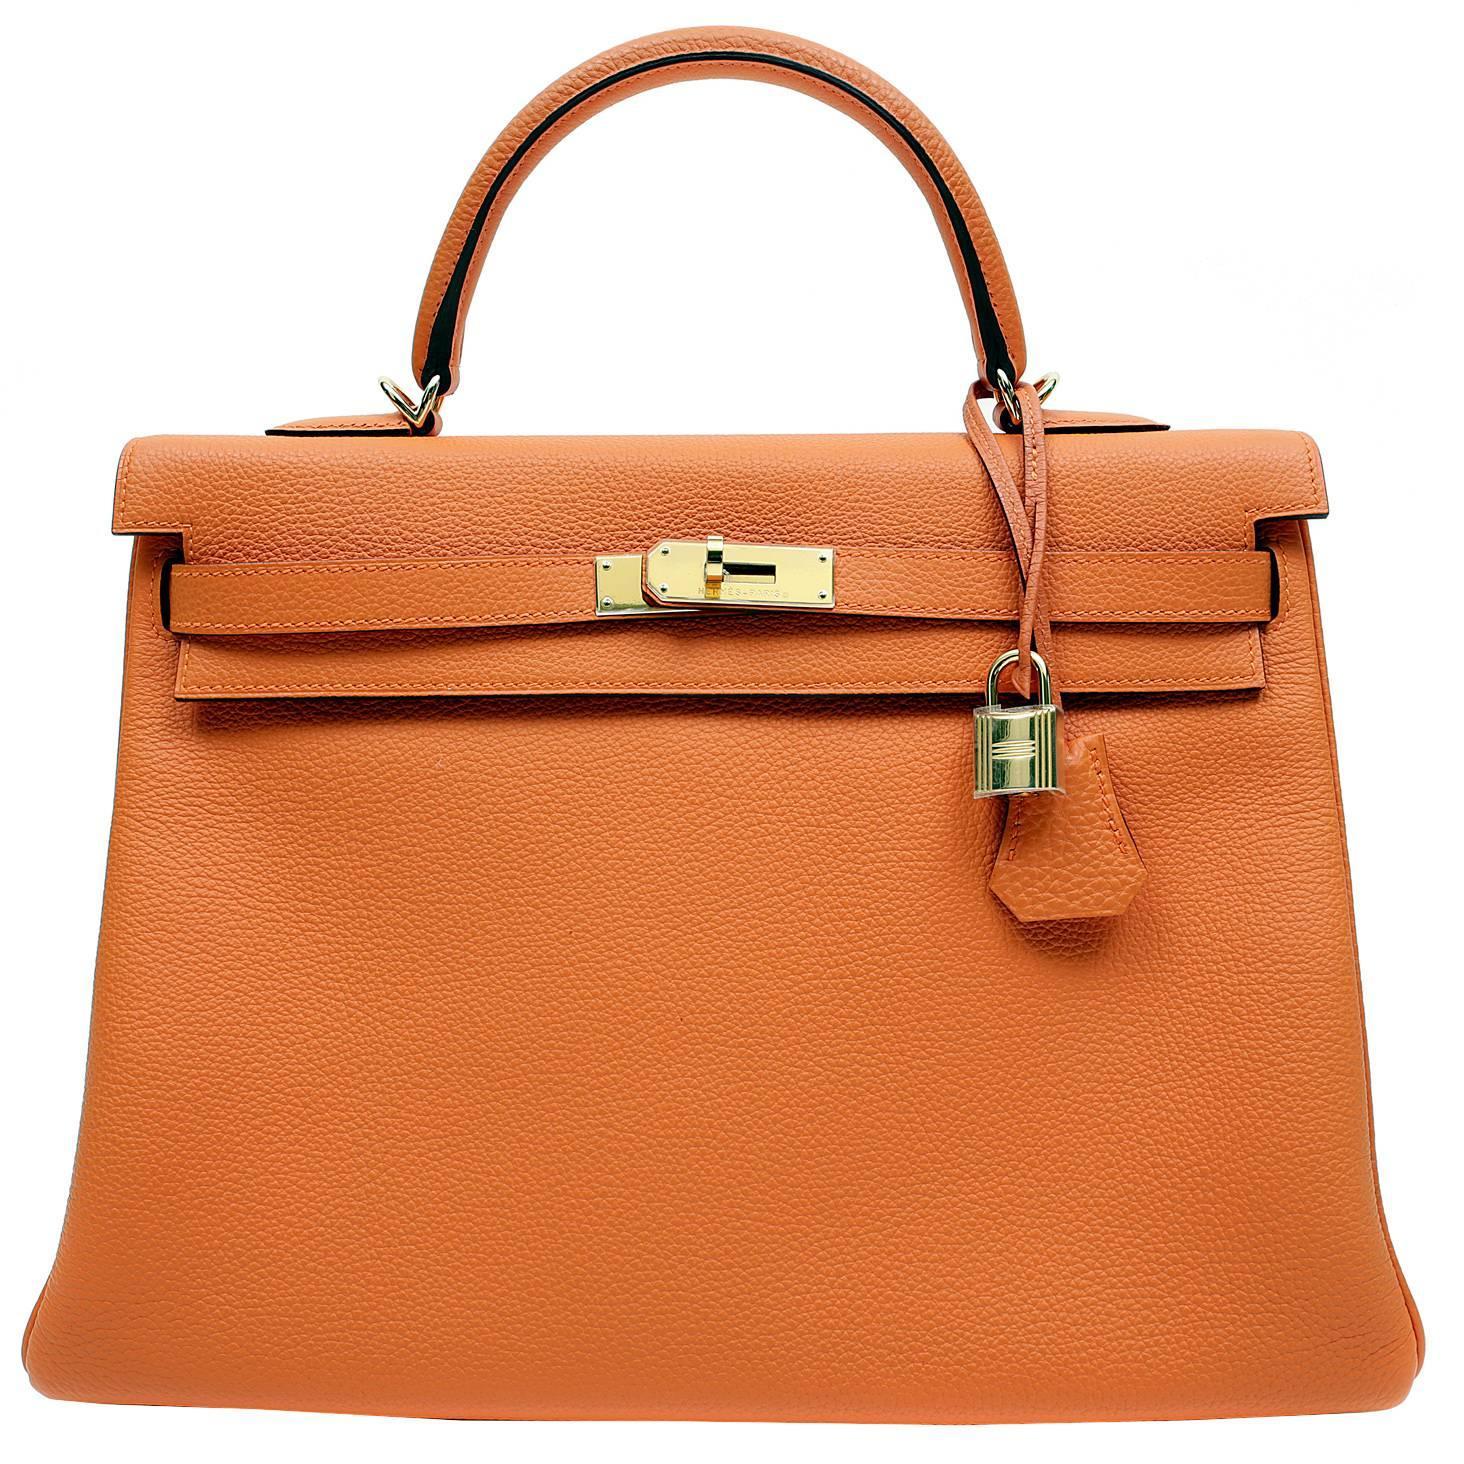 Herms 35 cm Orange Togo Leather Kelly Bag- Gold HW For Sale at ...